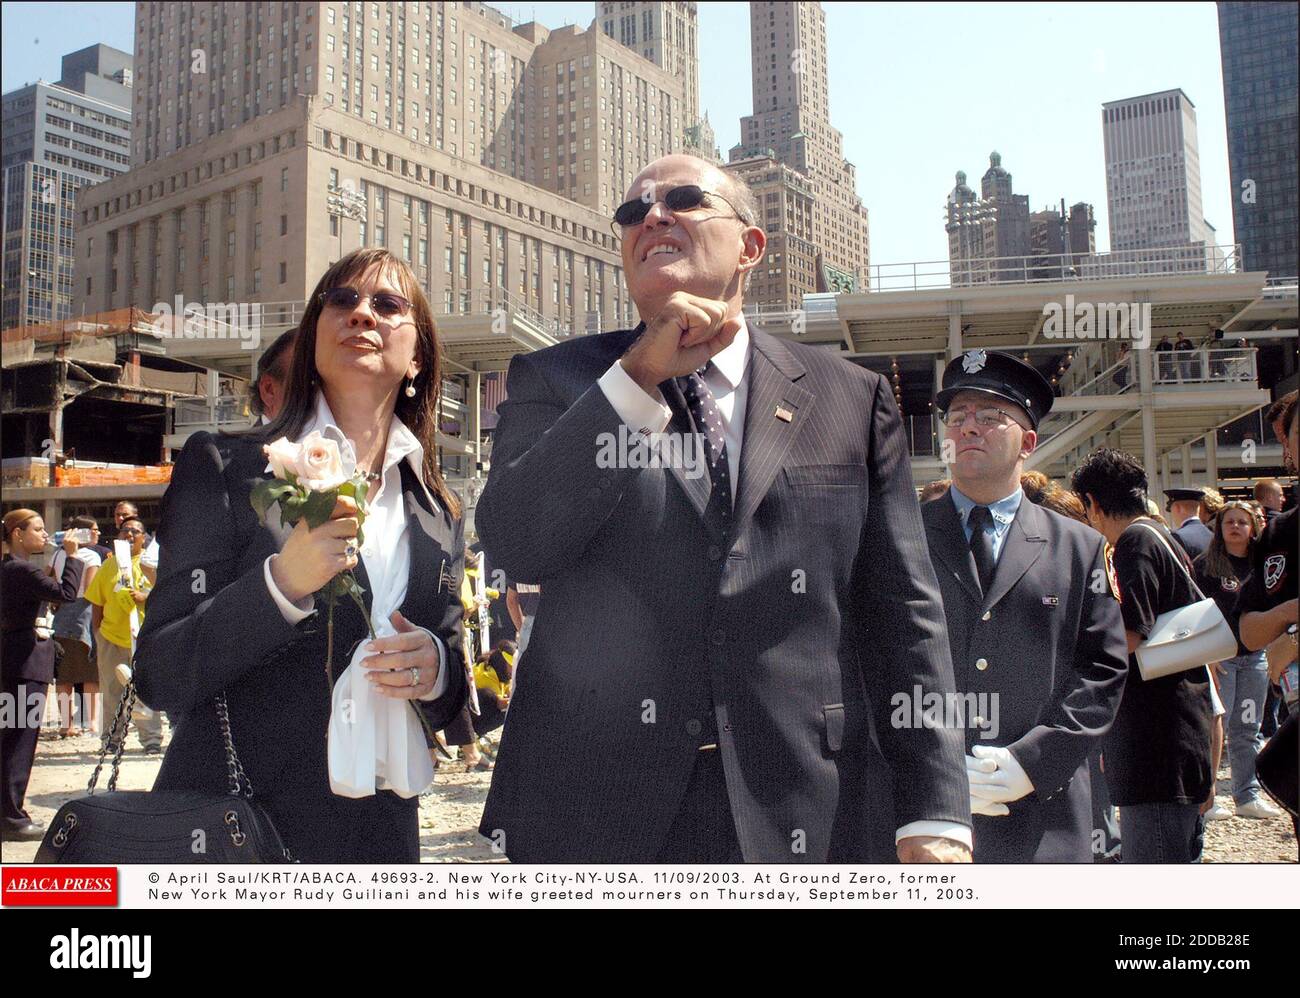 NO FILM, NO VIDEO, NO TV, NO DOCUMENTARIO - © APRILE SAUL/KRT/ABACA. 49693-2. New York City-NY-USA. 11/09/2003. A Ground Zero, l'ex sindaco di New York Rudy Guiliani e sua moglie hanno salutato i lutto giovedì 11 settembre 2003. Foto Stock